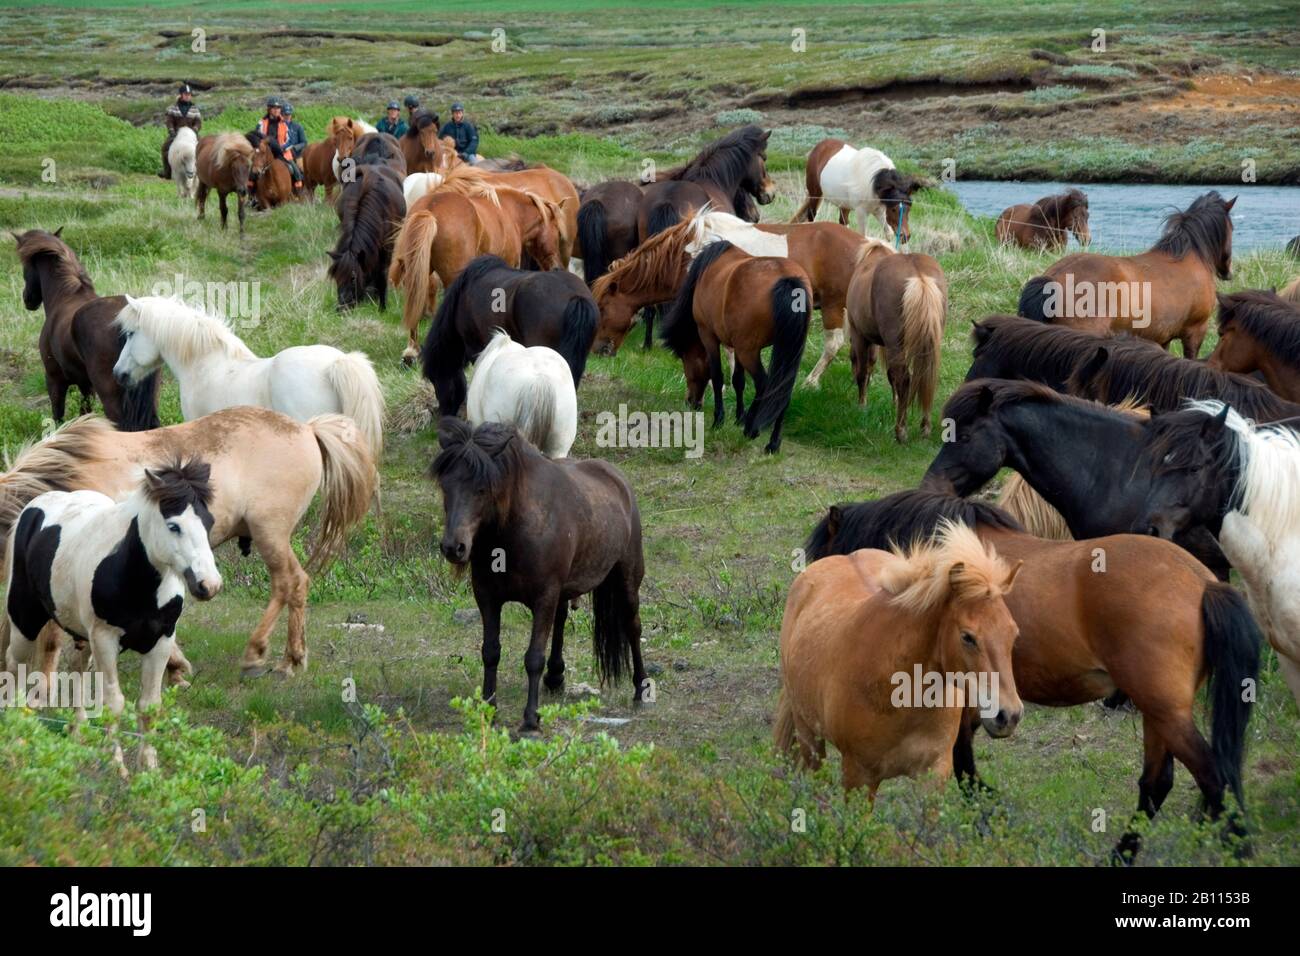 Islandic horse, Icelandic horse, Iceland pony (Equus przewalskii f. caballus), Herde, Iceland Stock Photo